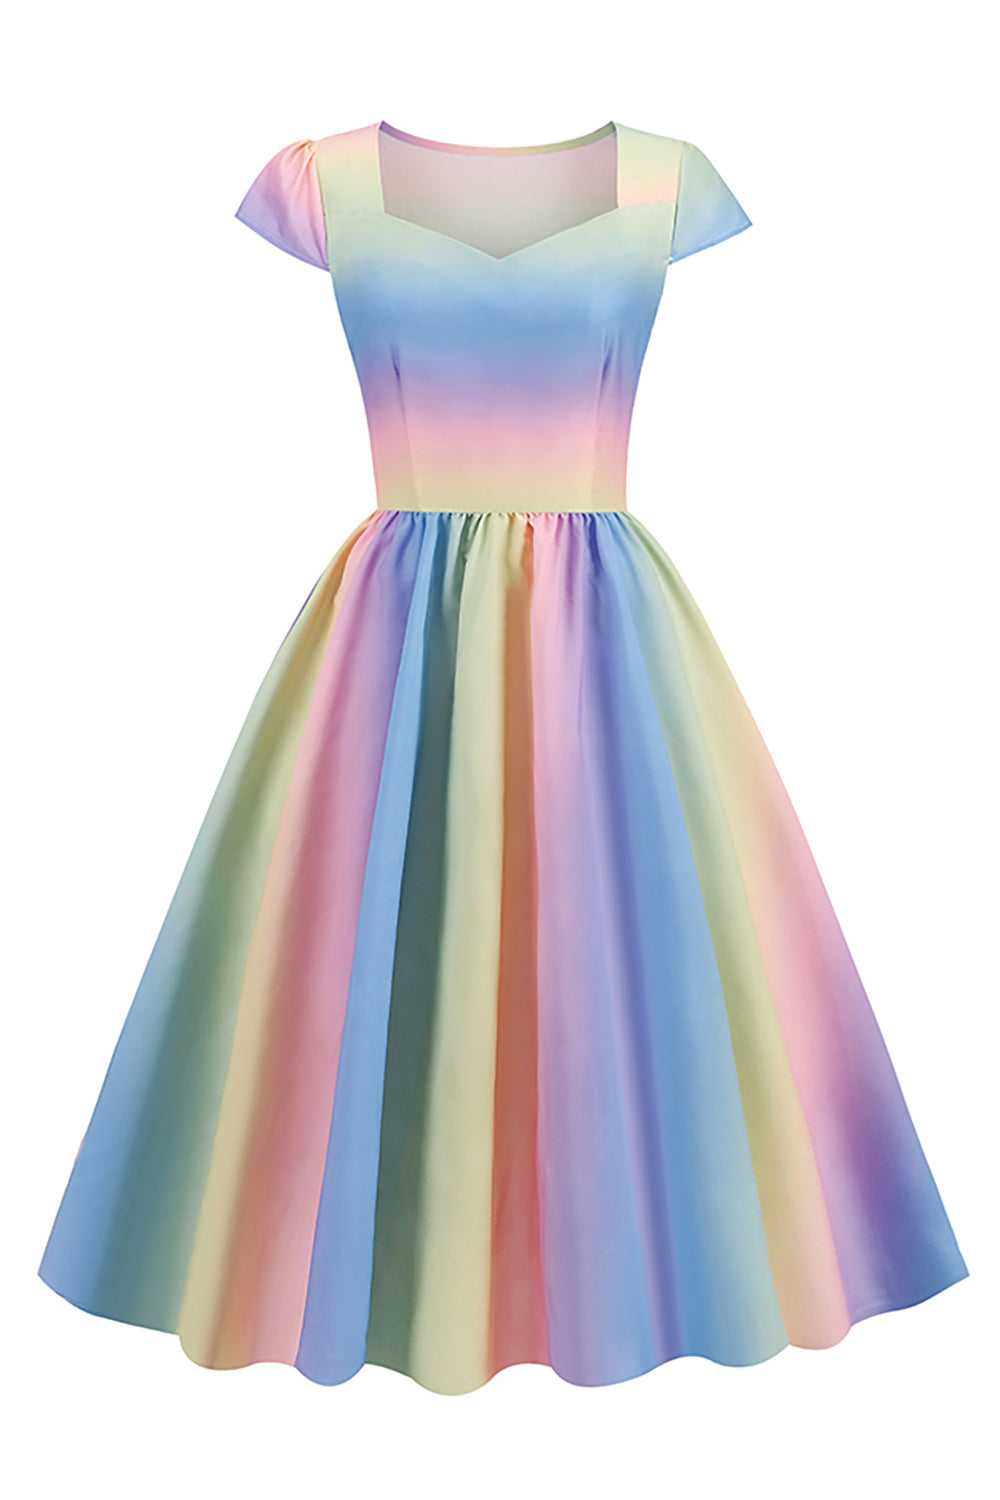 Vestido vintage de 1950 impresso multi cores